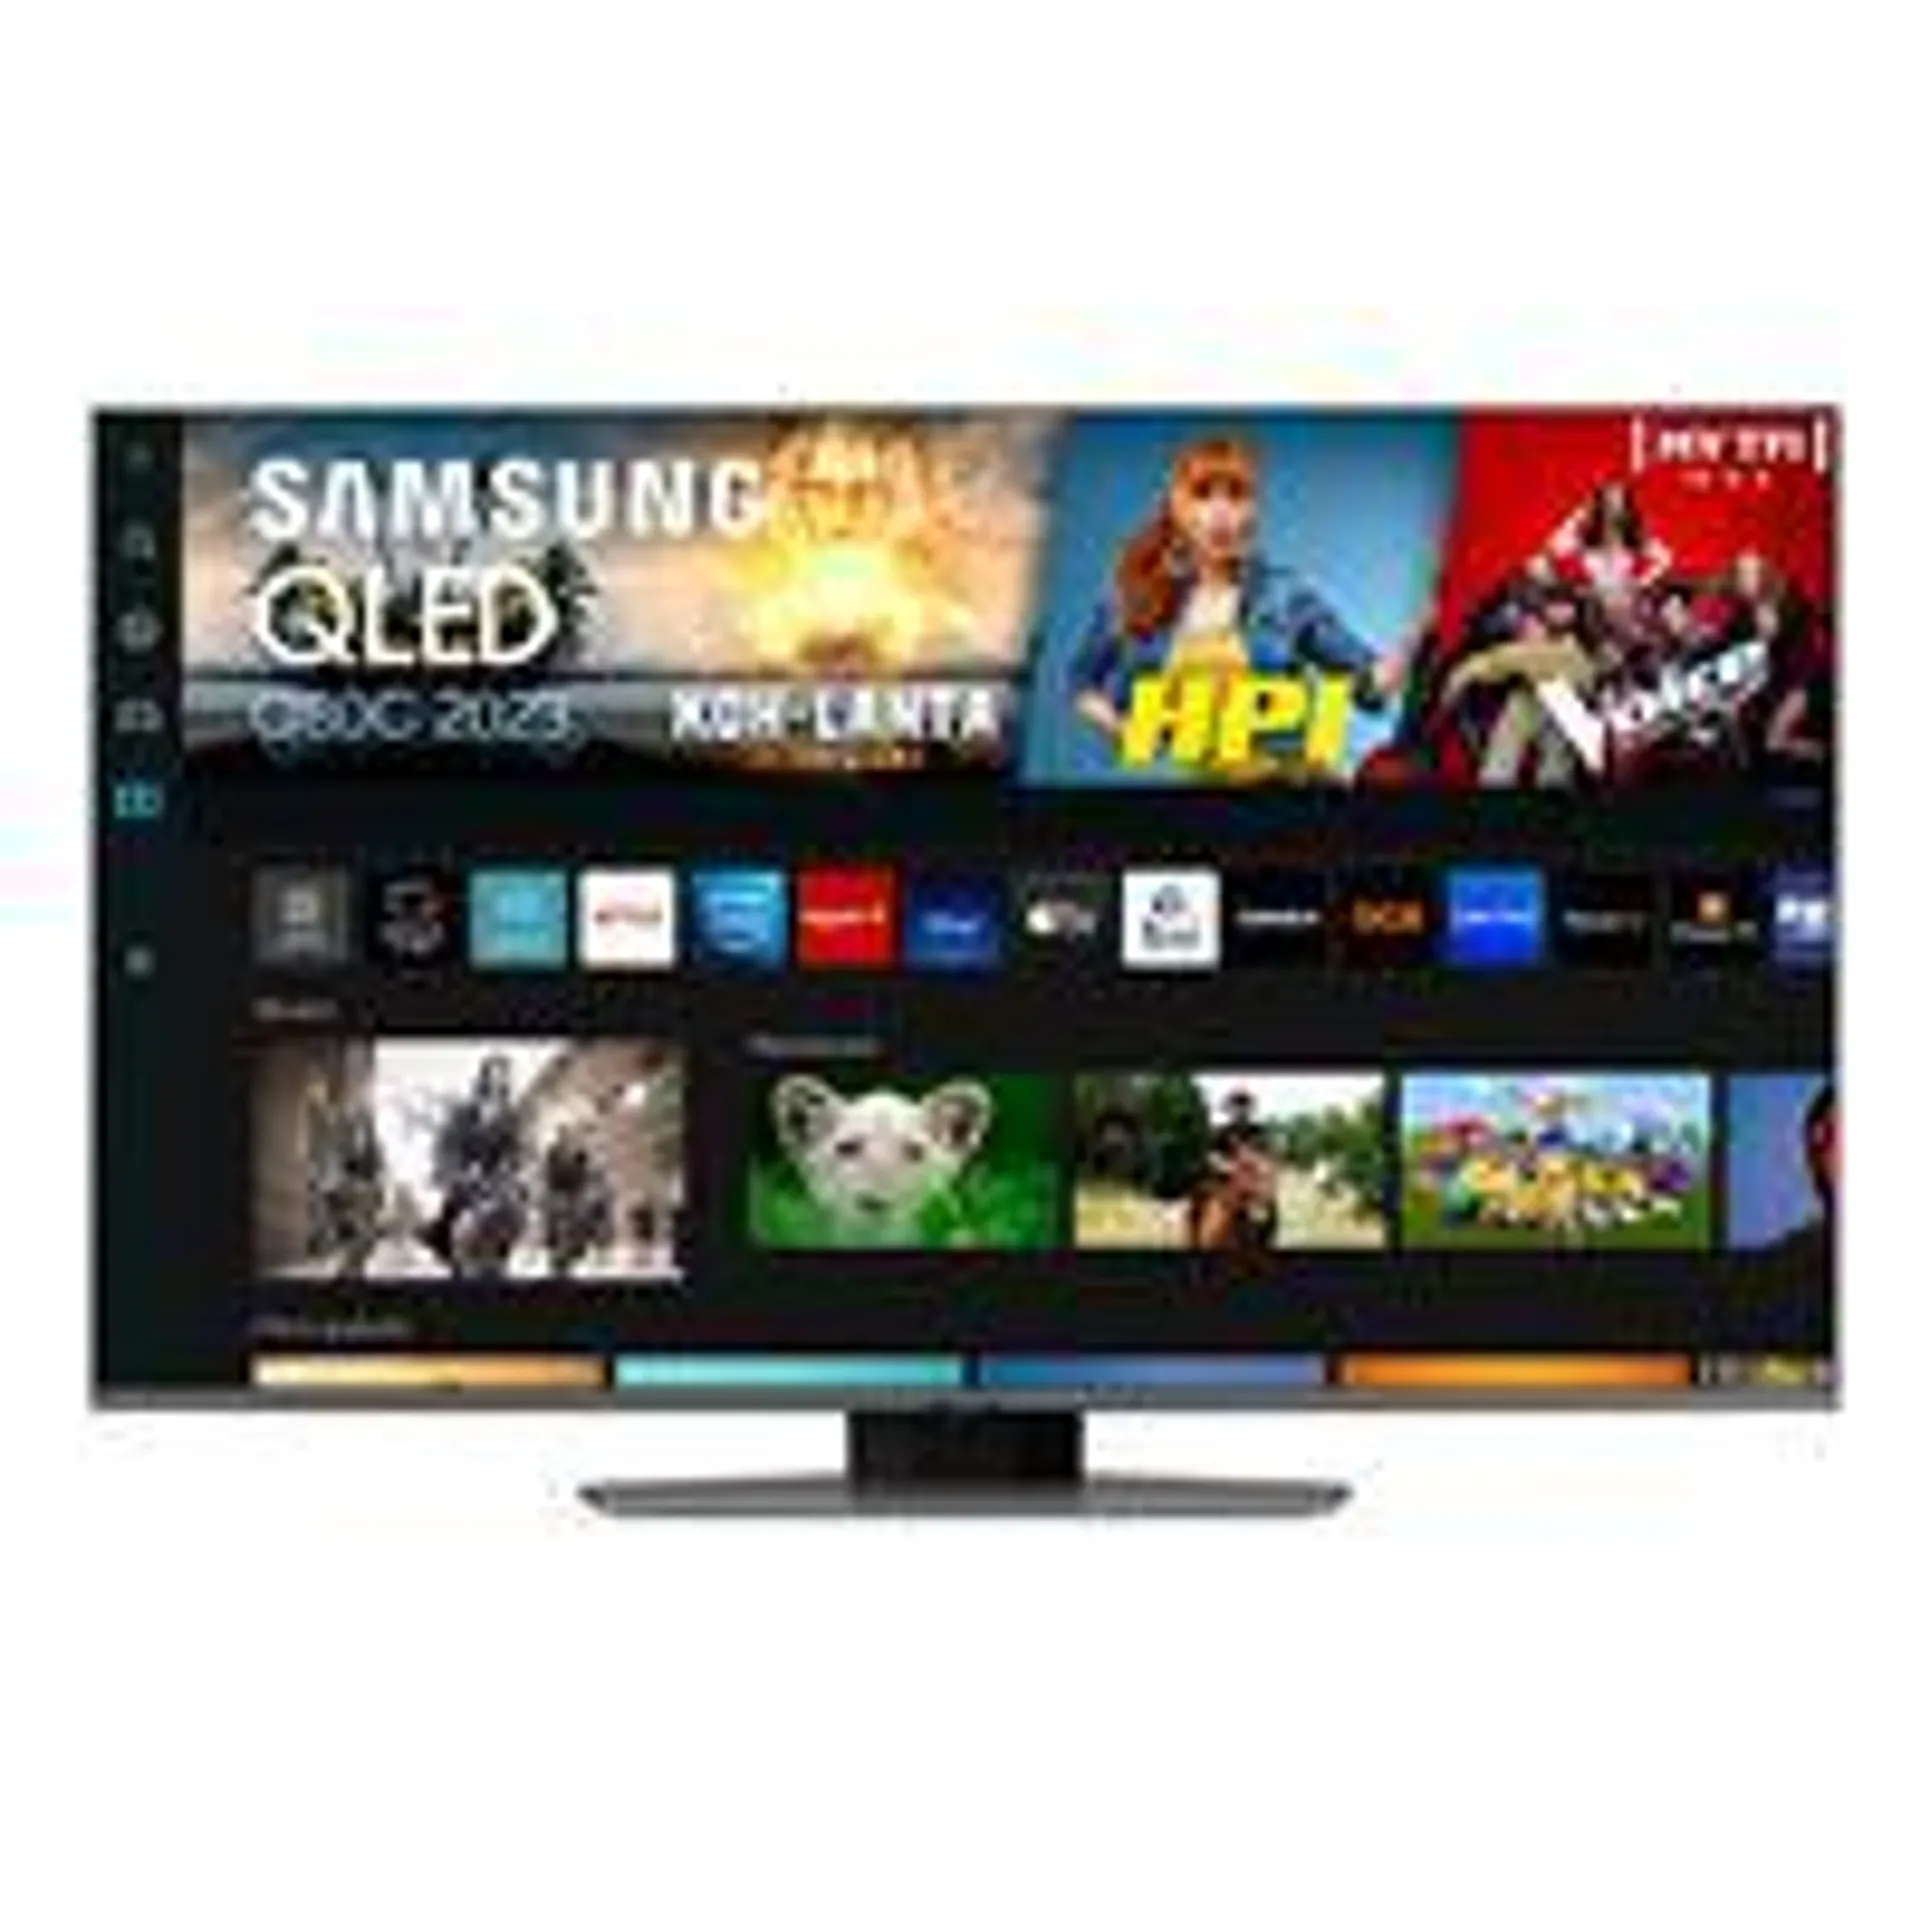 TV Samsung QLED TQ55Q80C 140 cm 4K UHD Smart TV Argent carbone